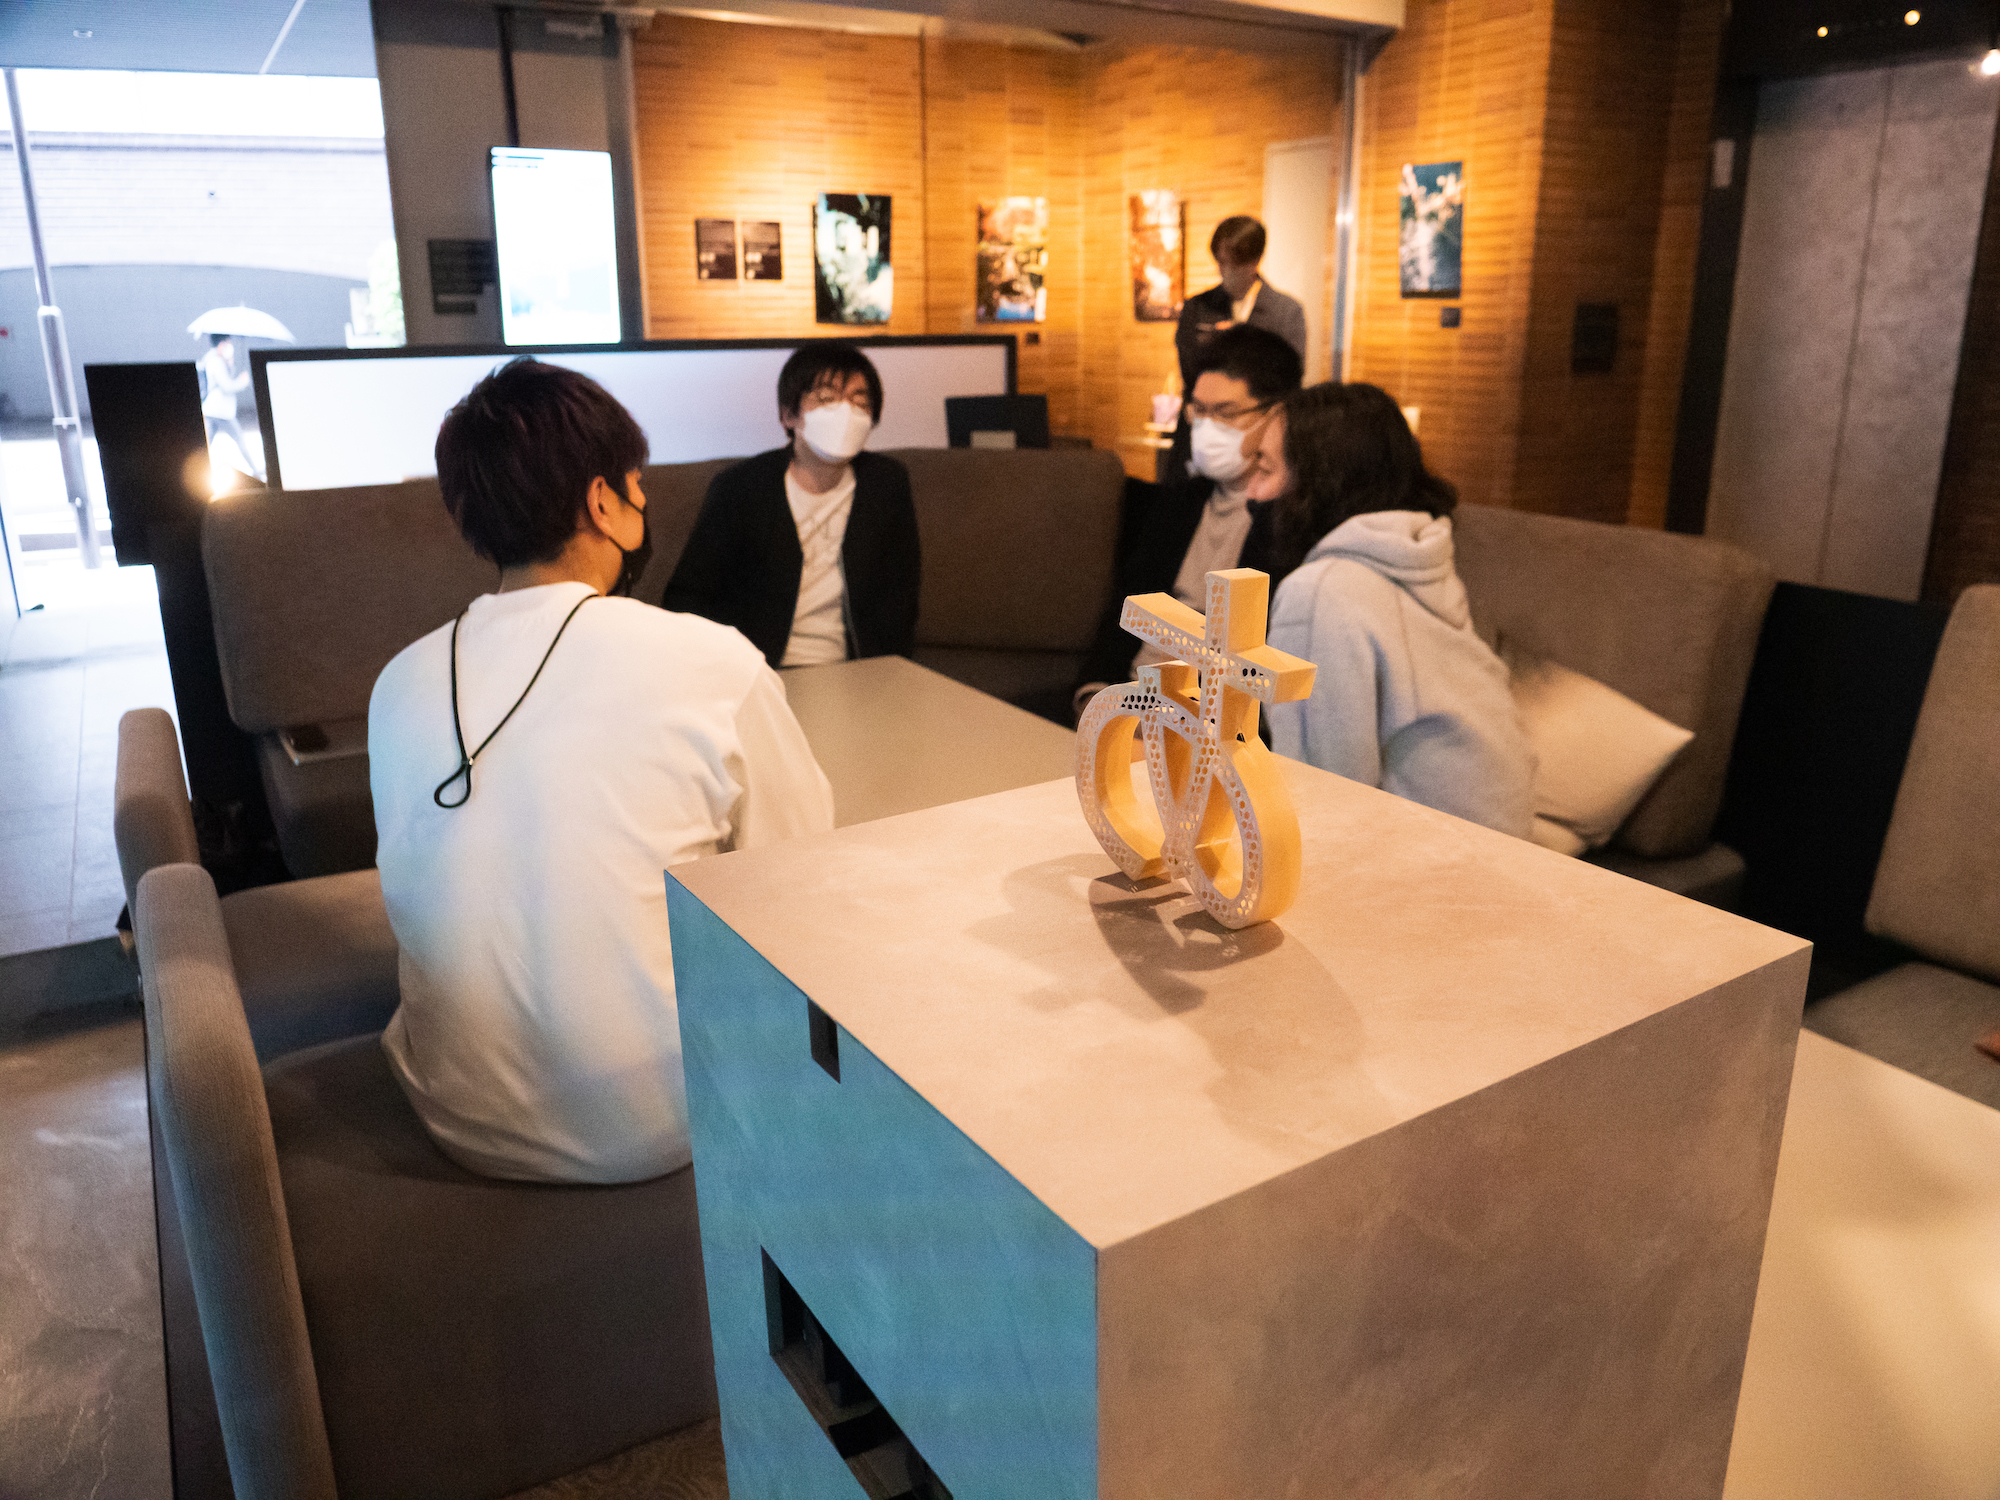 座談会は『言山百景』の展示会場である日本橋のアートホテル・BnA_WALLにて行われた。